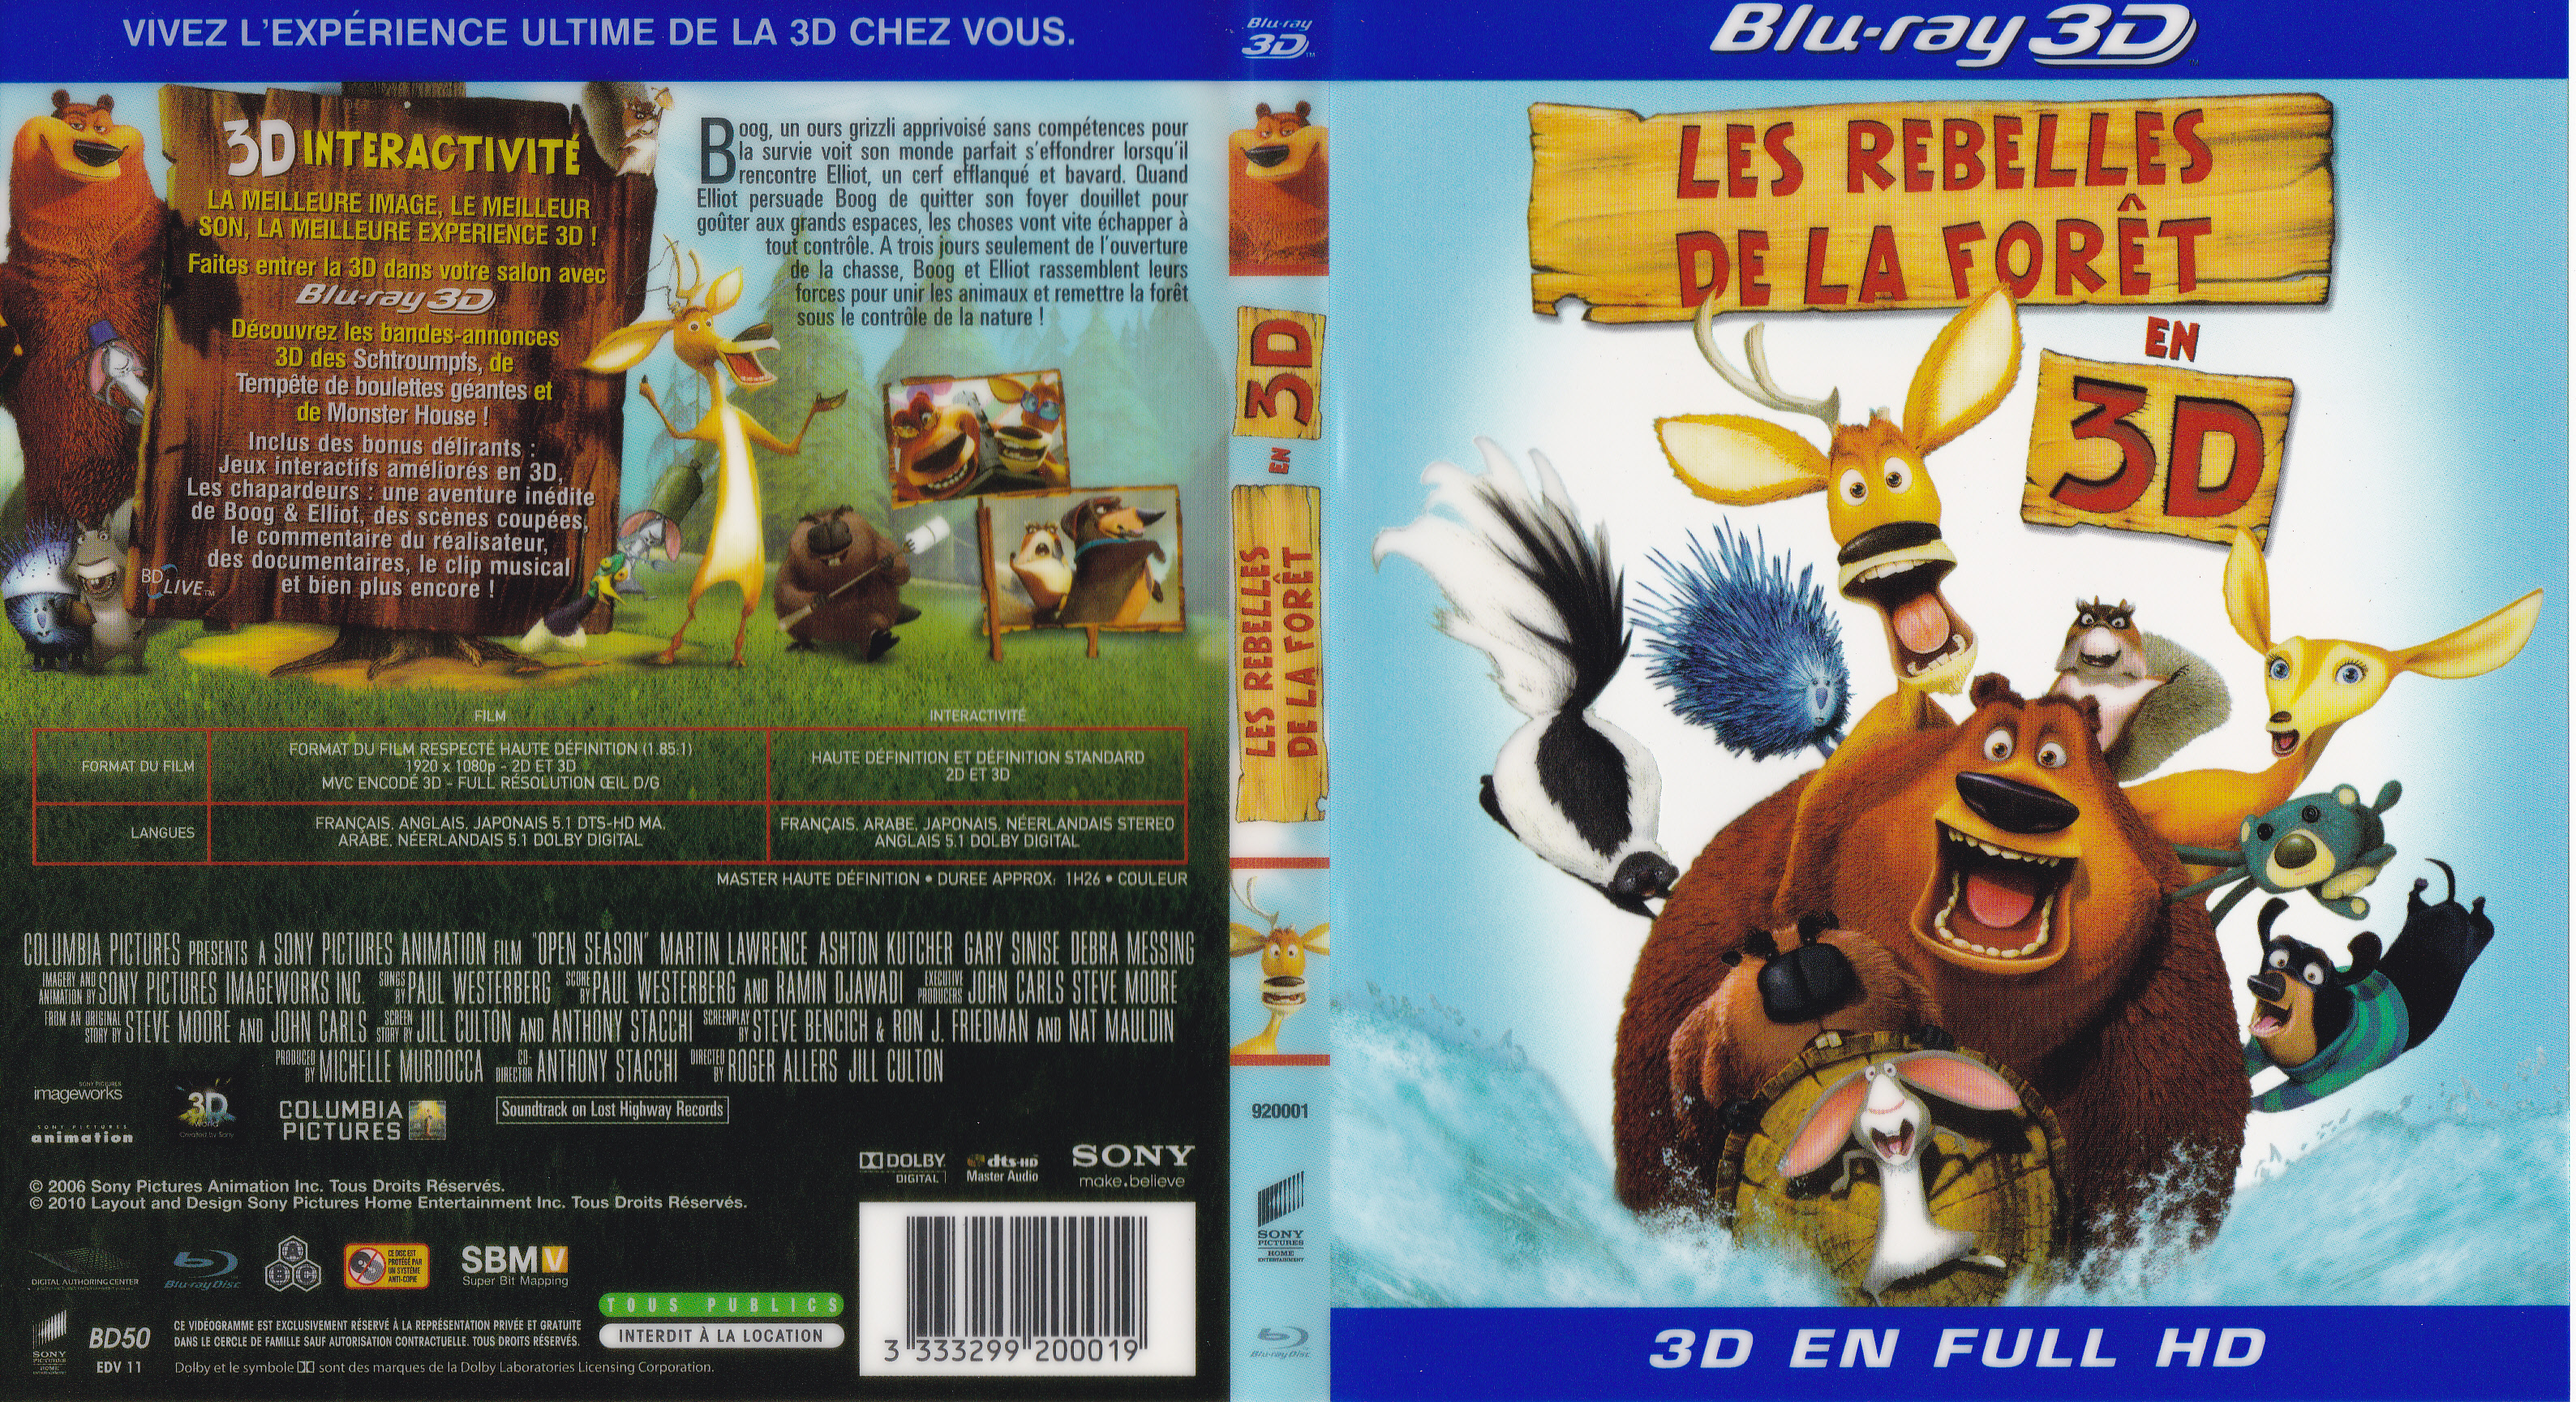 Jaquette DVD Les rebelles de la foret 3D (BLU-RAY)